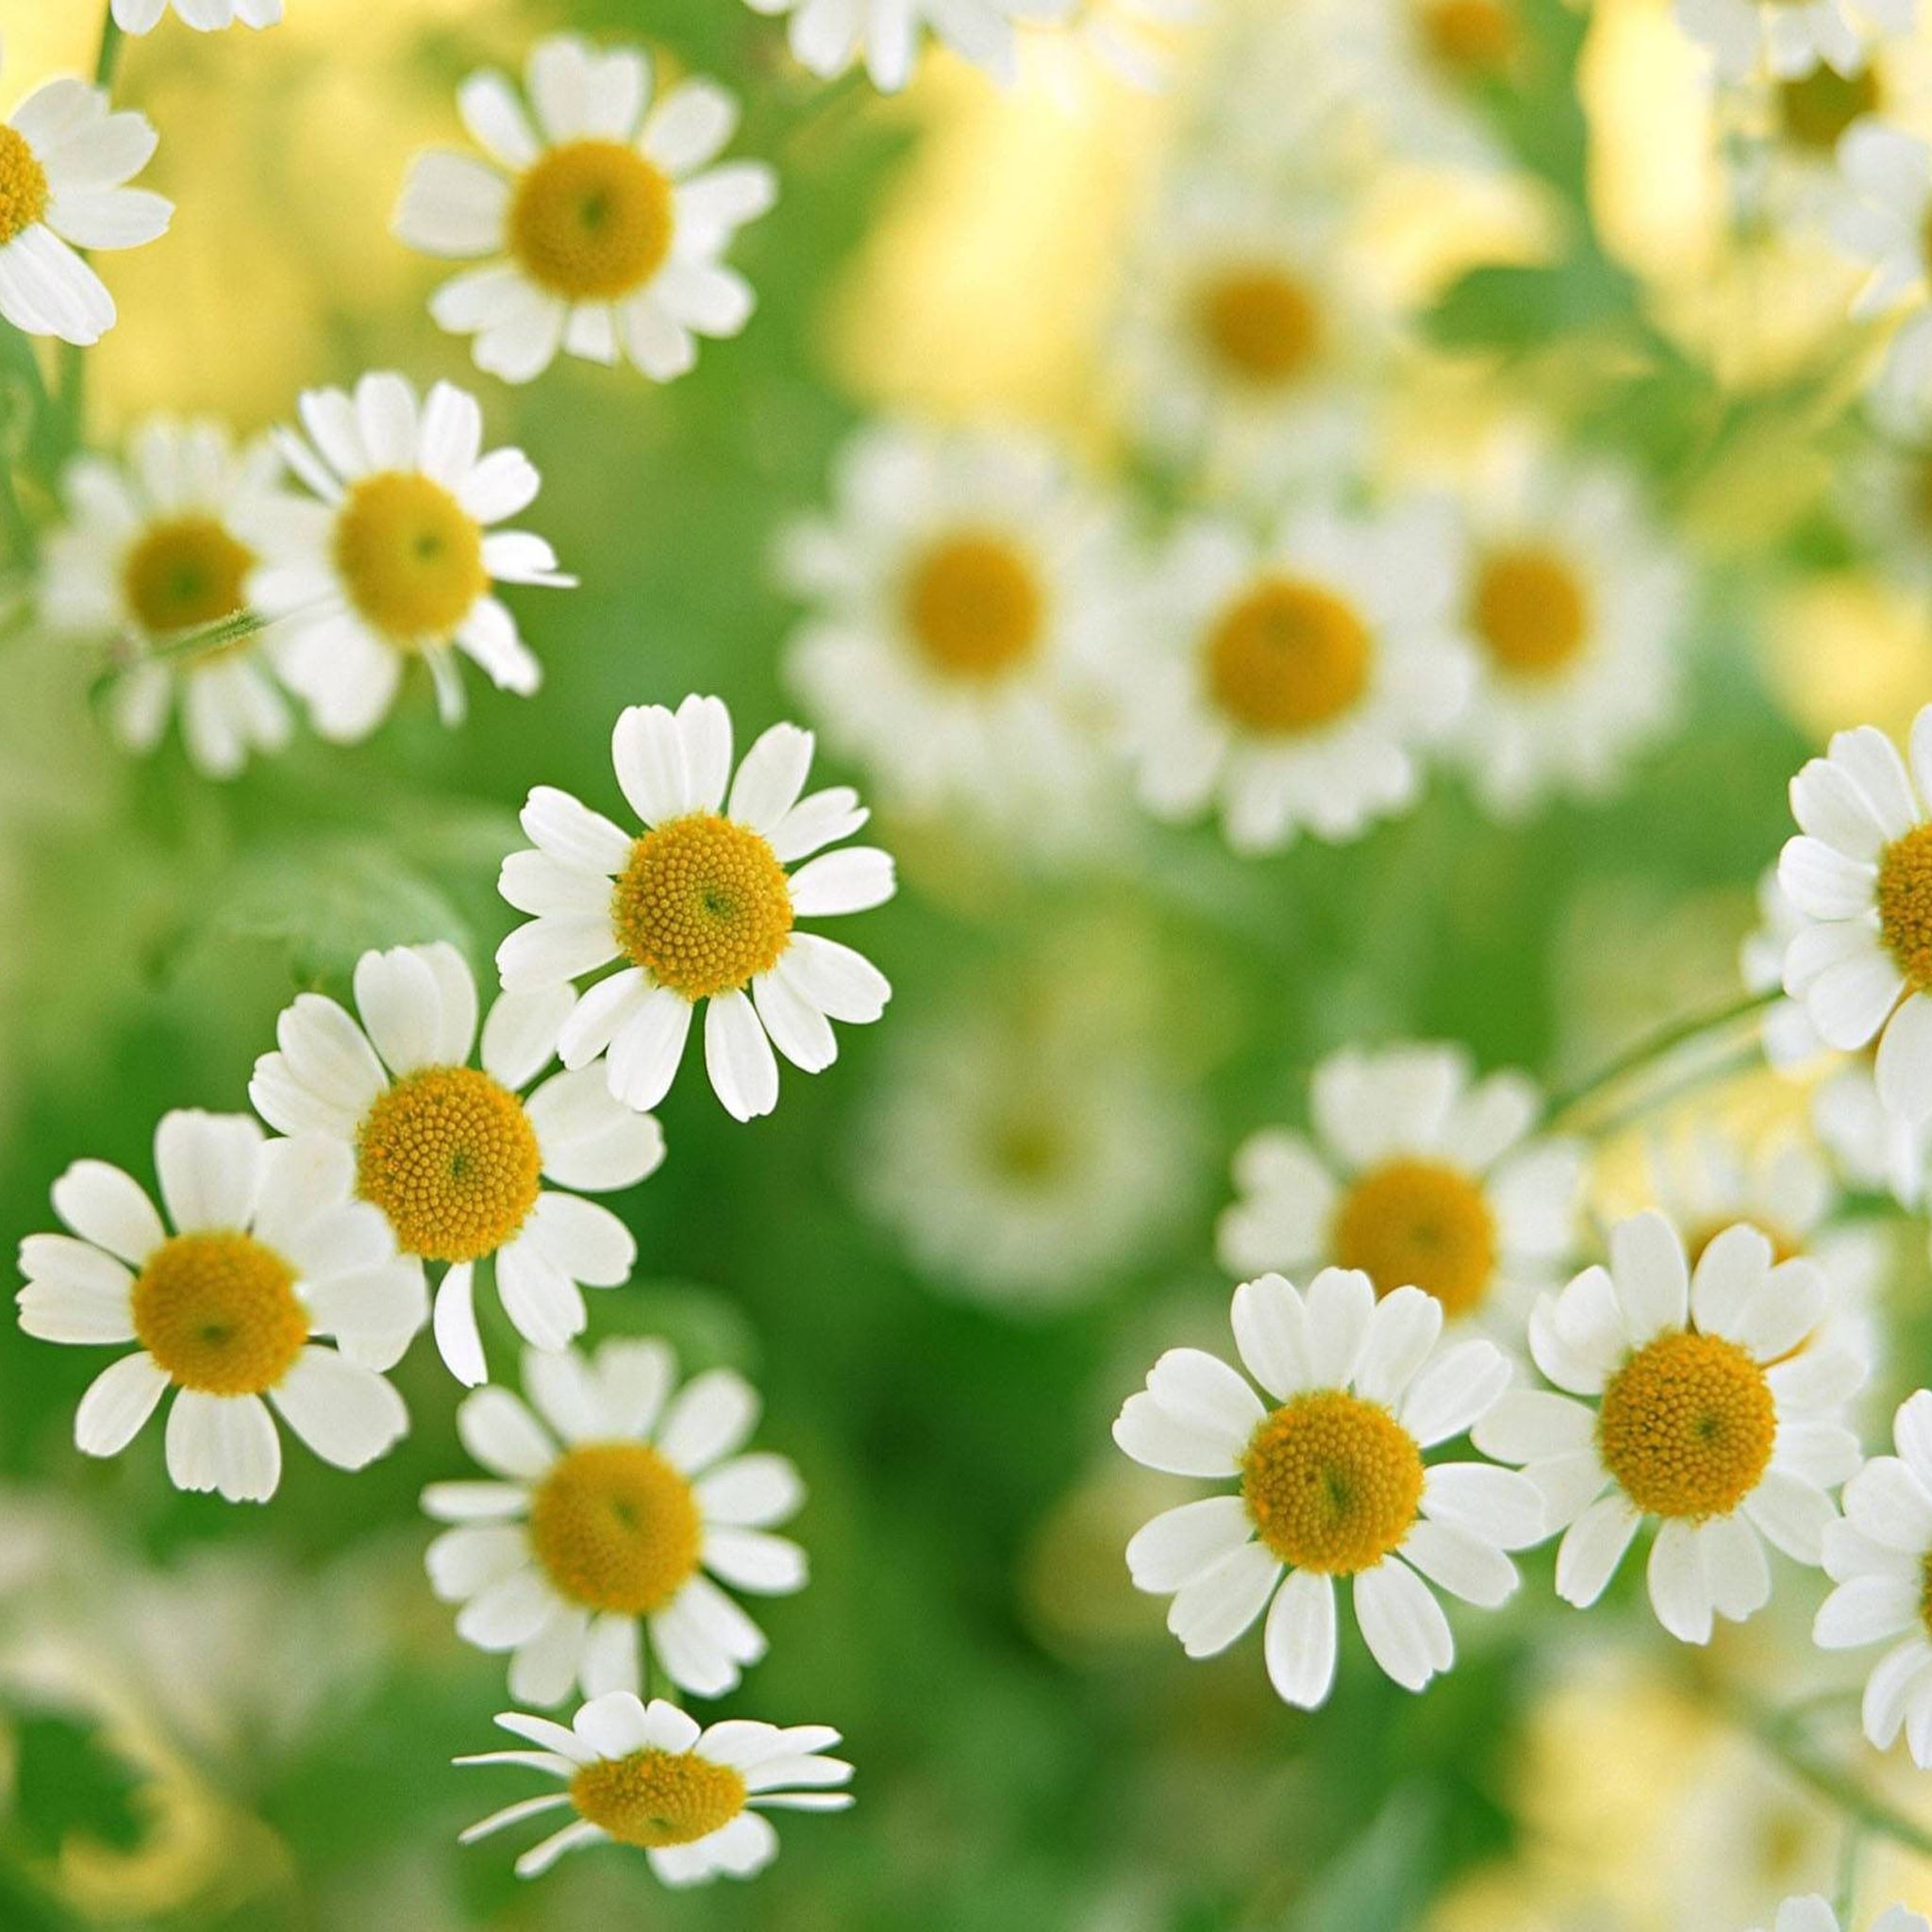 Nature Daisy Field: Thiên nhiên trong hình ảnh chính là hoa cúc trên đồng cỏ. Hãy cùng chiêm ngưỡng khung cảnh tuyệt đẹp của điền tràng với đầy hoa cúc và bầu trời xanh. Khi đắm mình trong hình ảnh này, bạn sẽ cảm thấy nhẹ nhàng và thư giãn. Đó chính là lý do tại sao hoa cúc là một loài hoa được yêu thích trên khắp thế giới.